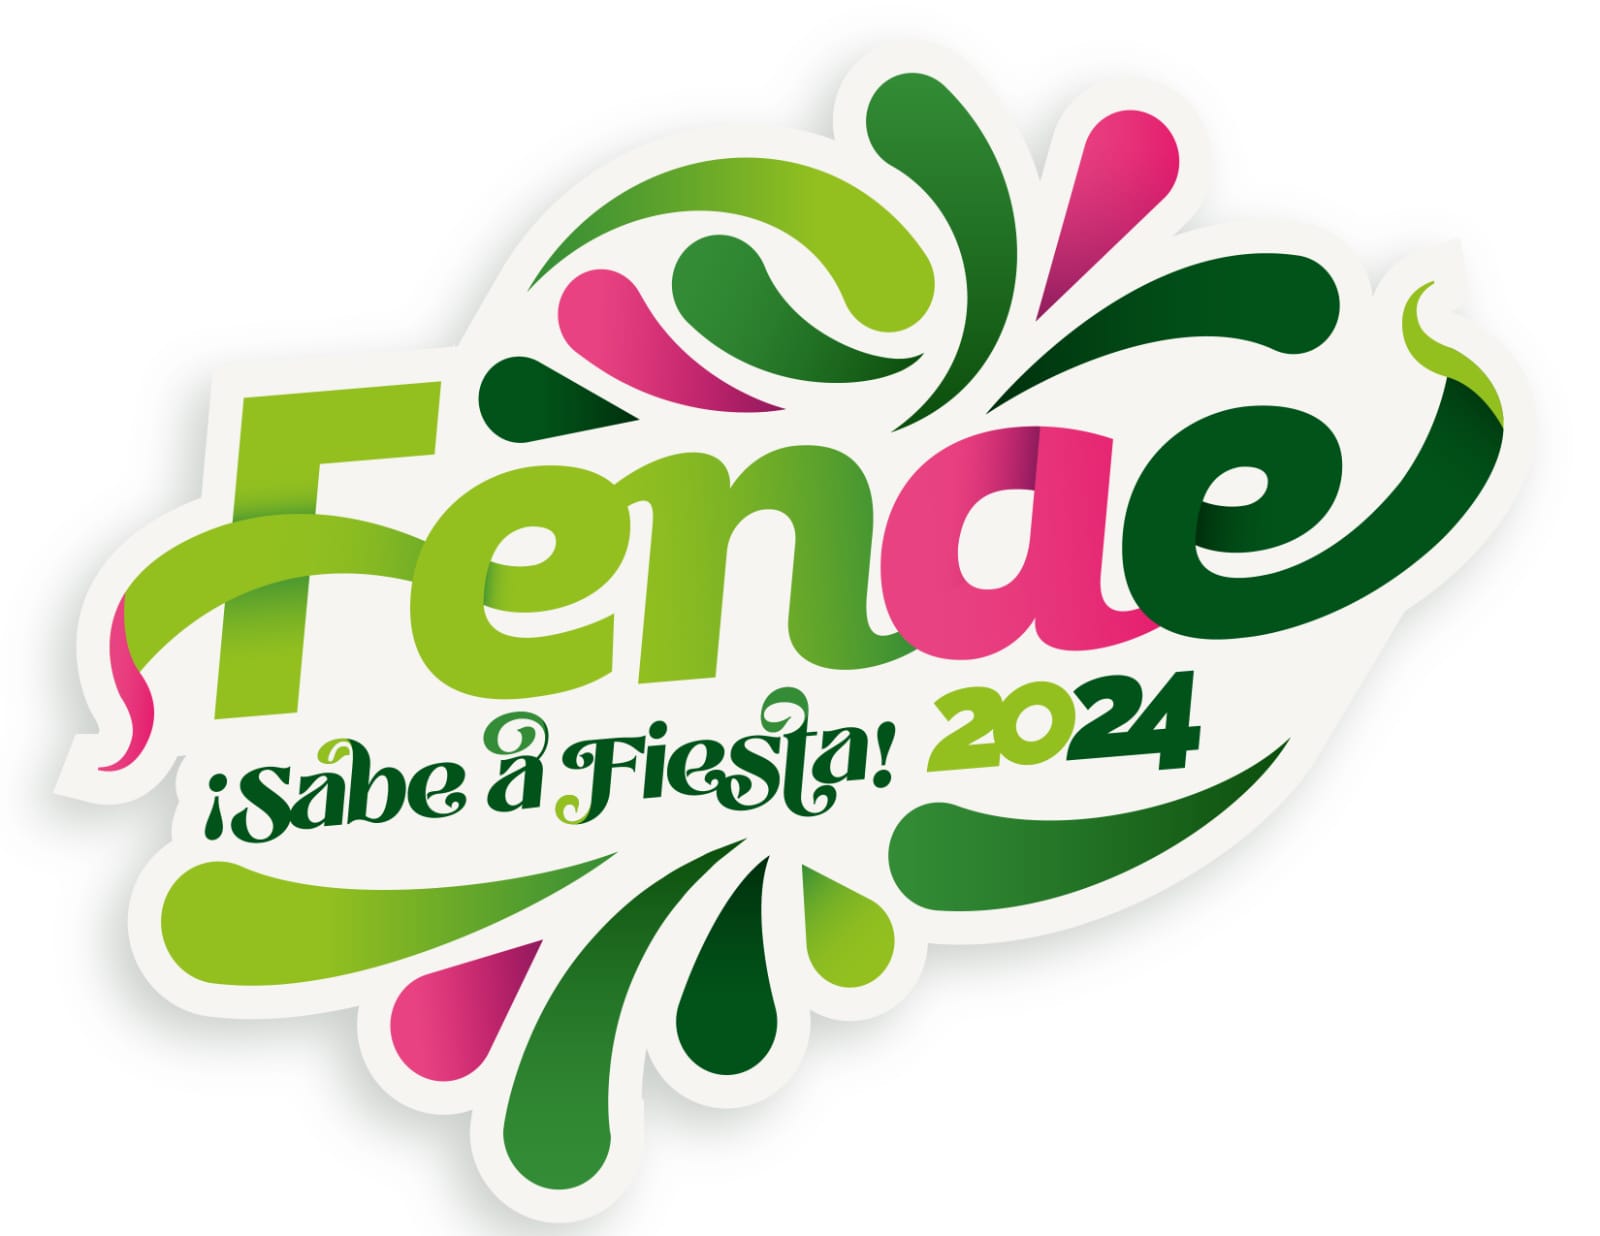 En su décima edición, la FENAE presenta un espectacular cartel de conciertos gratuitos y para todos los gustos